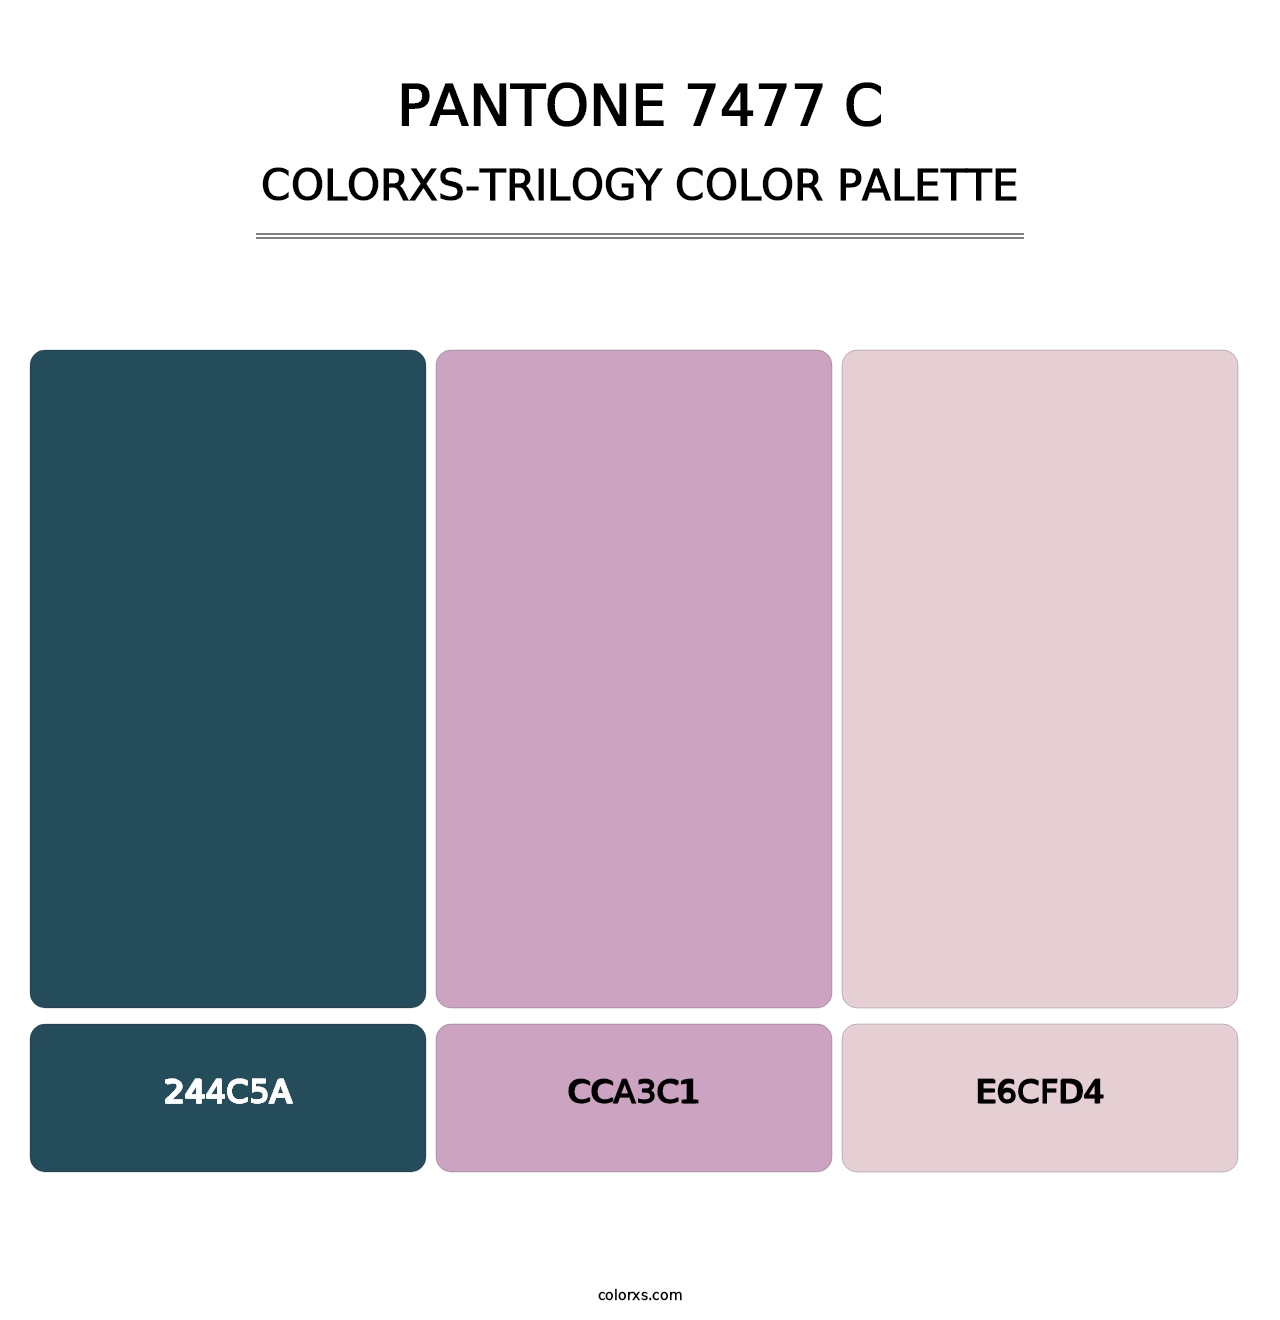 PANTONE 7477 C - Colorxs Trilogy Palette